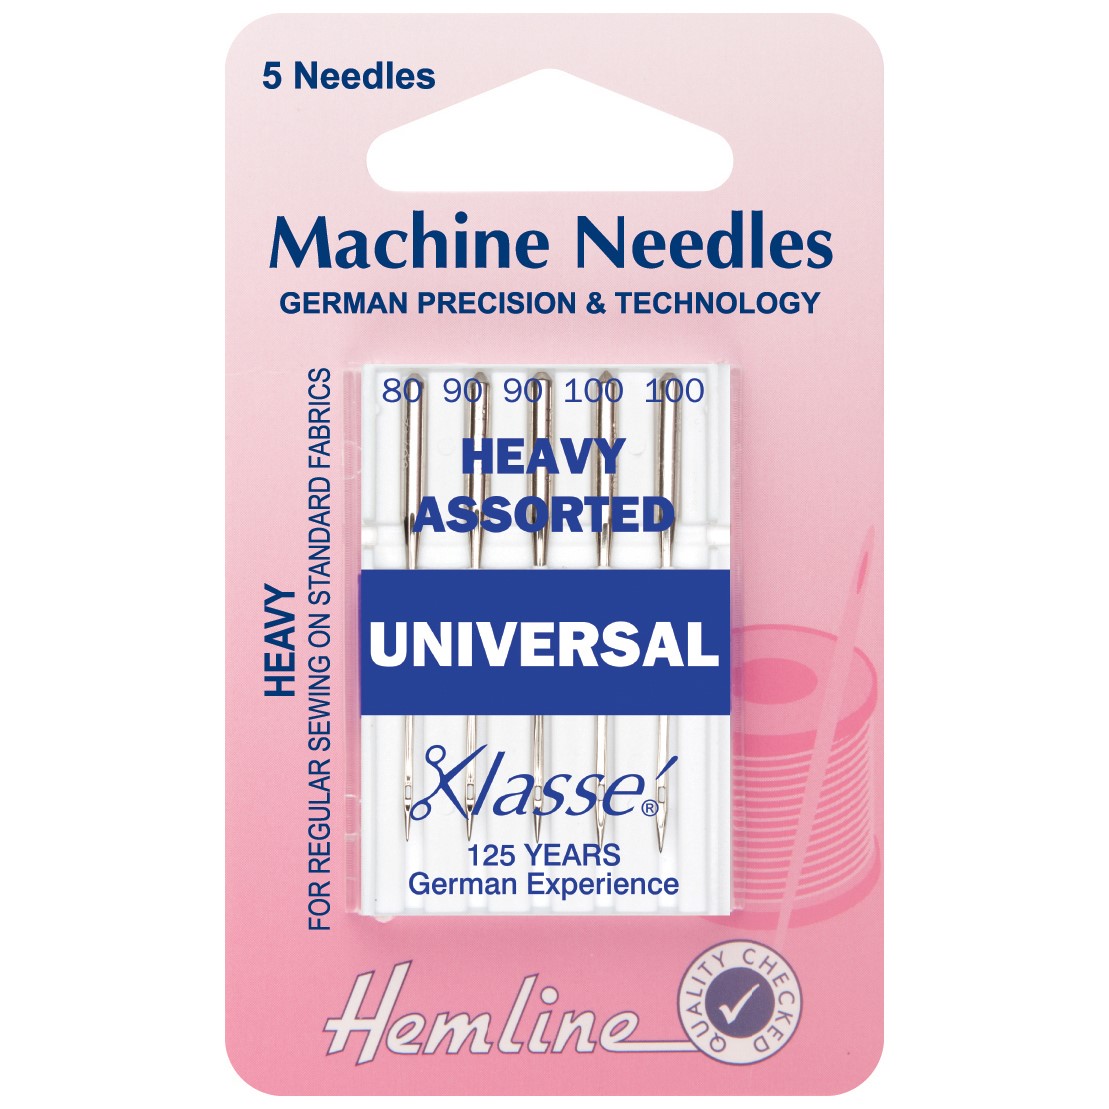 Hemline Machine Needles Heavy Assorted Universal 